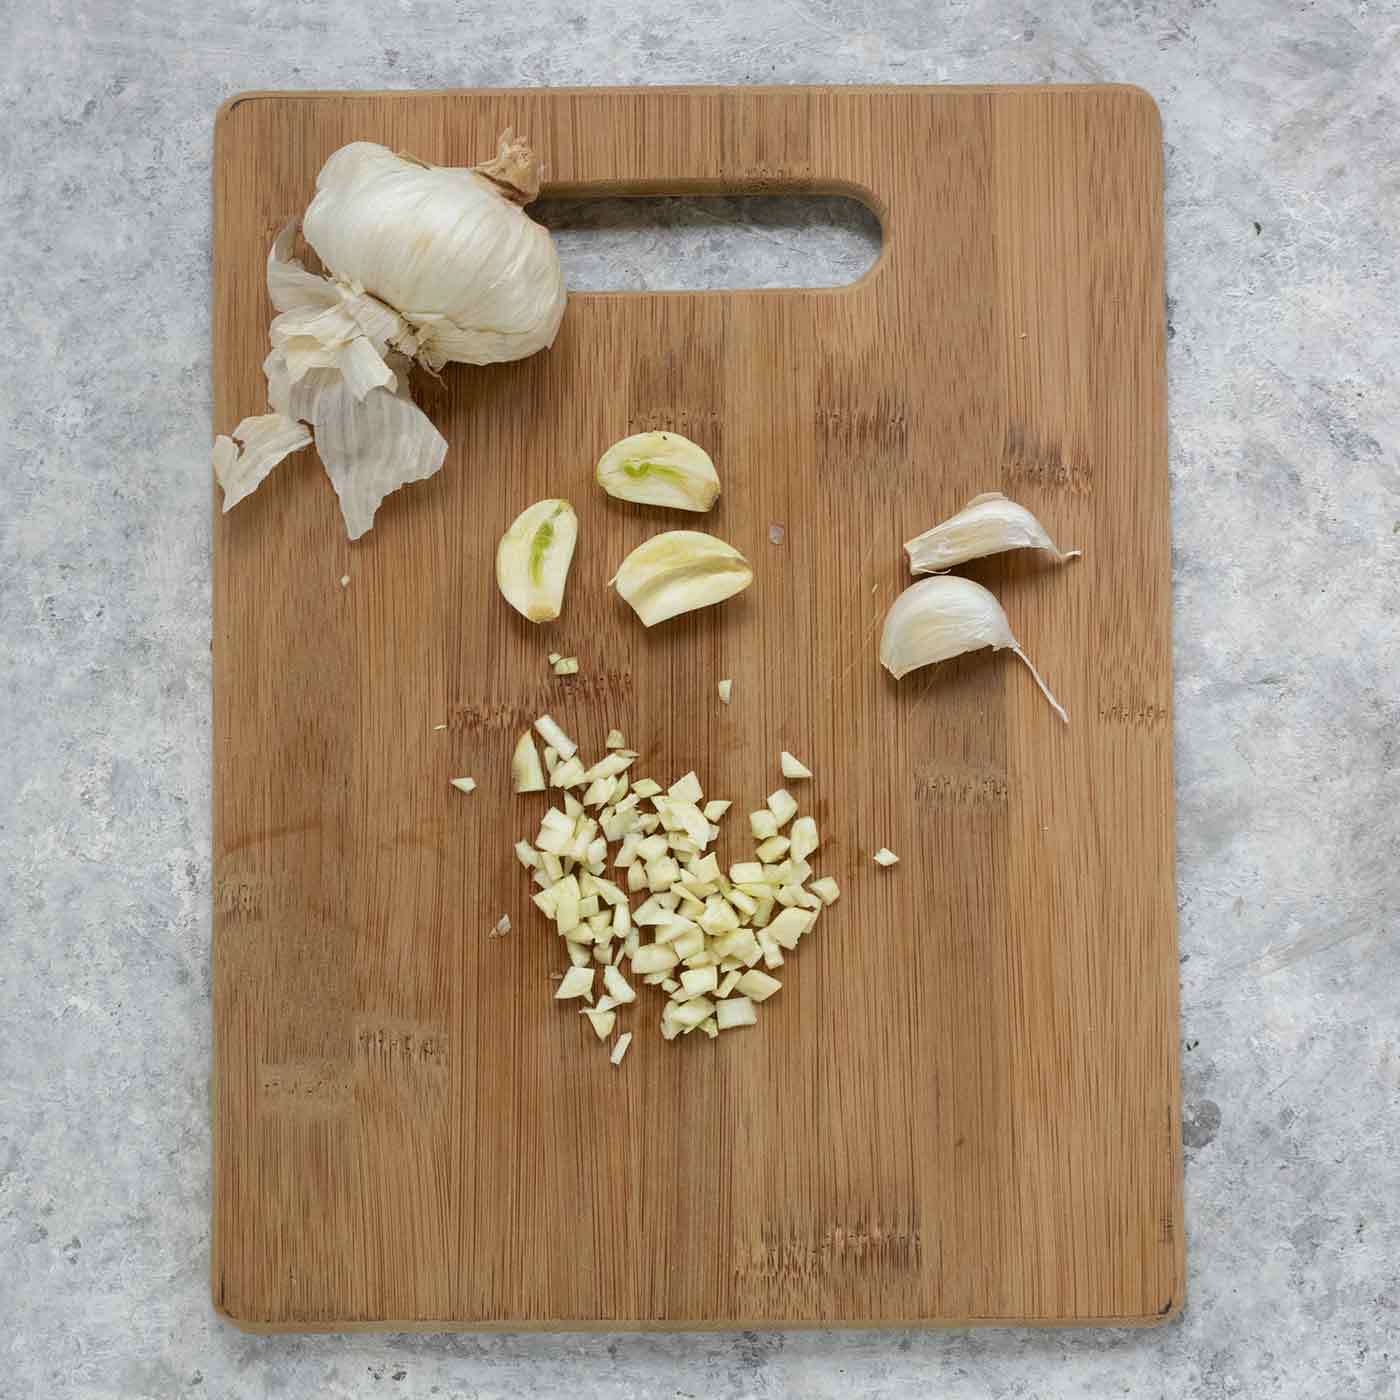 A head of garlic plus minced garlic cloves on a cutting board.